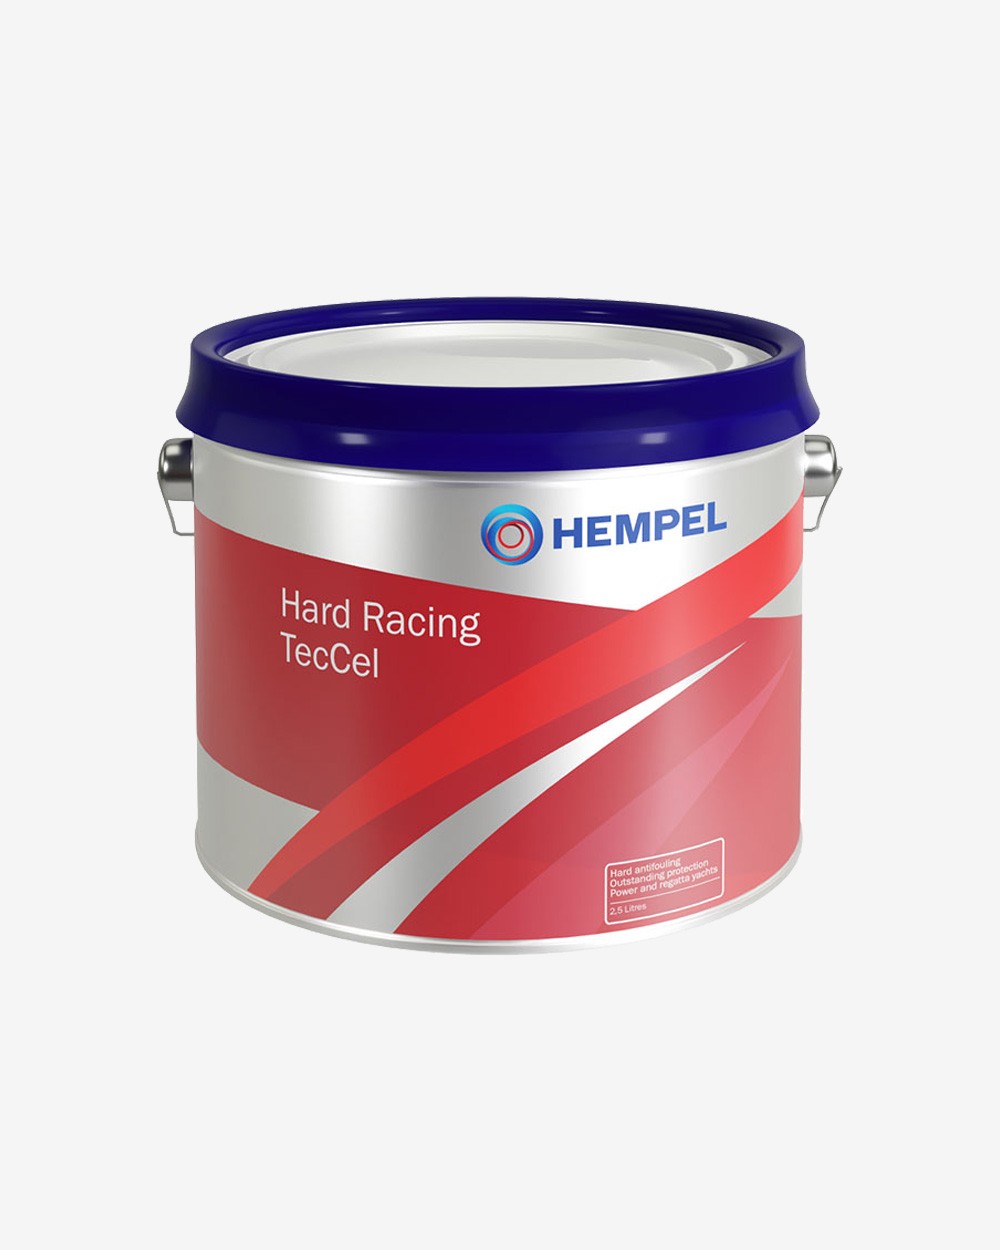 Billede af Hempel Hard Racing TecCel, 2.5 liter